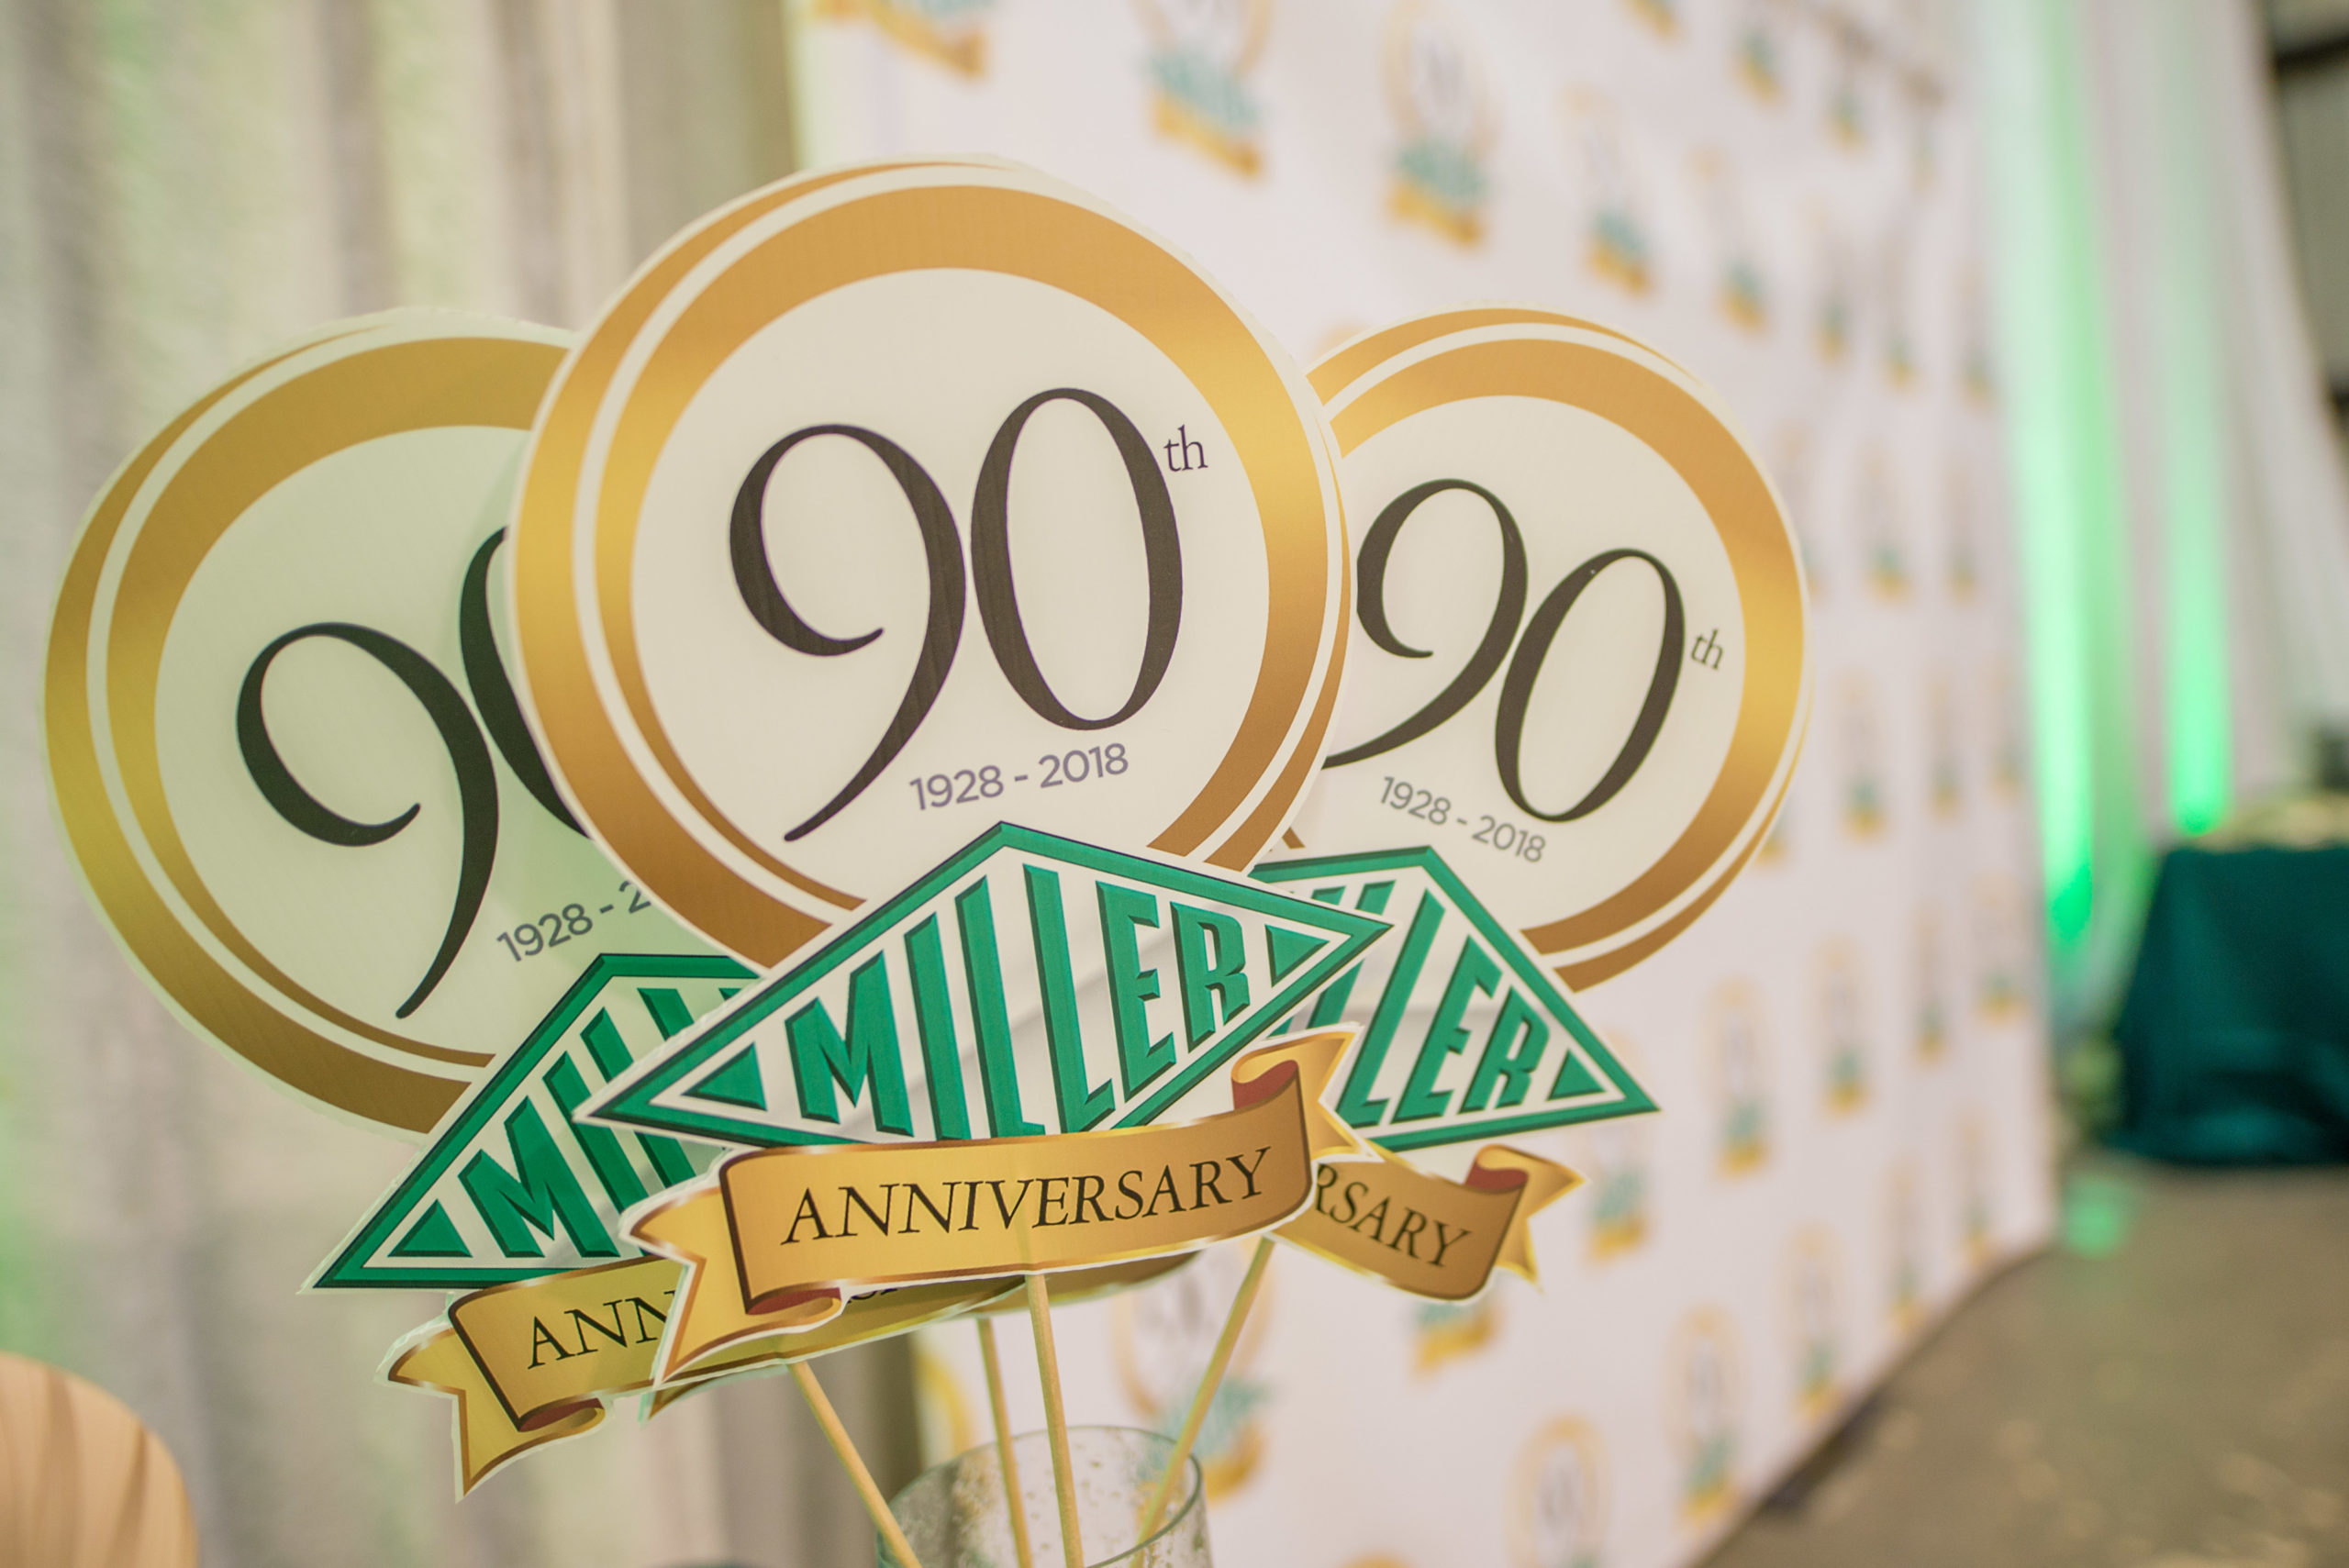 Cronología del 90º aniversario